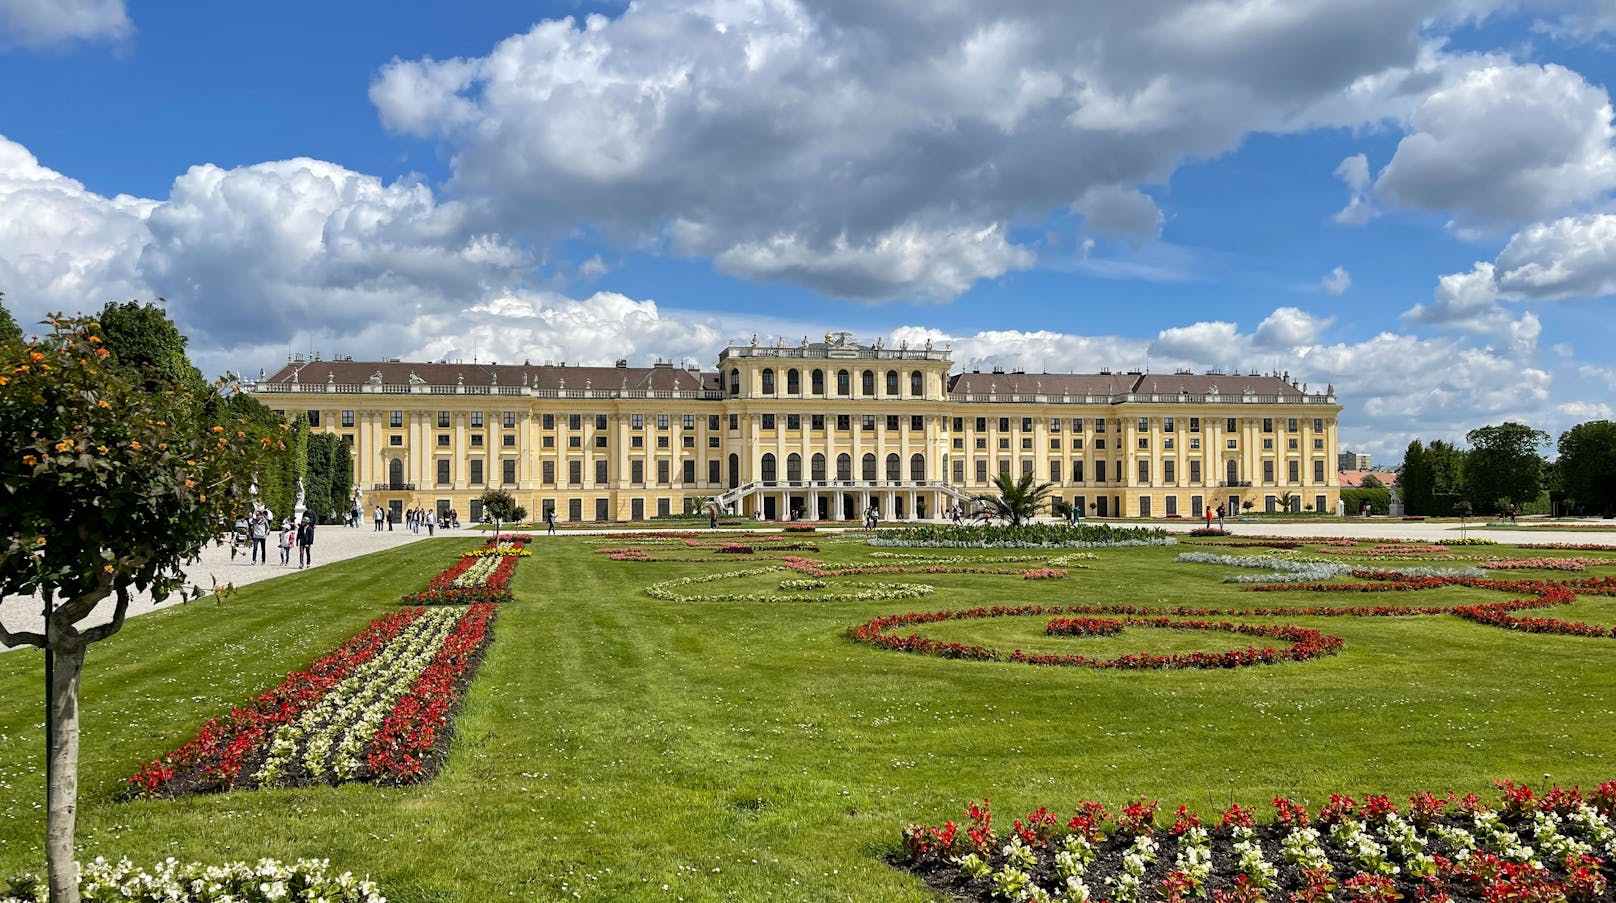 Schönste Gebäude der Welt gekürt – Wien in den Top 10